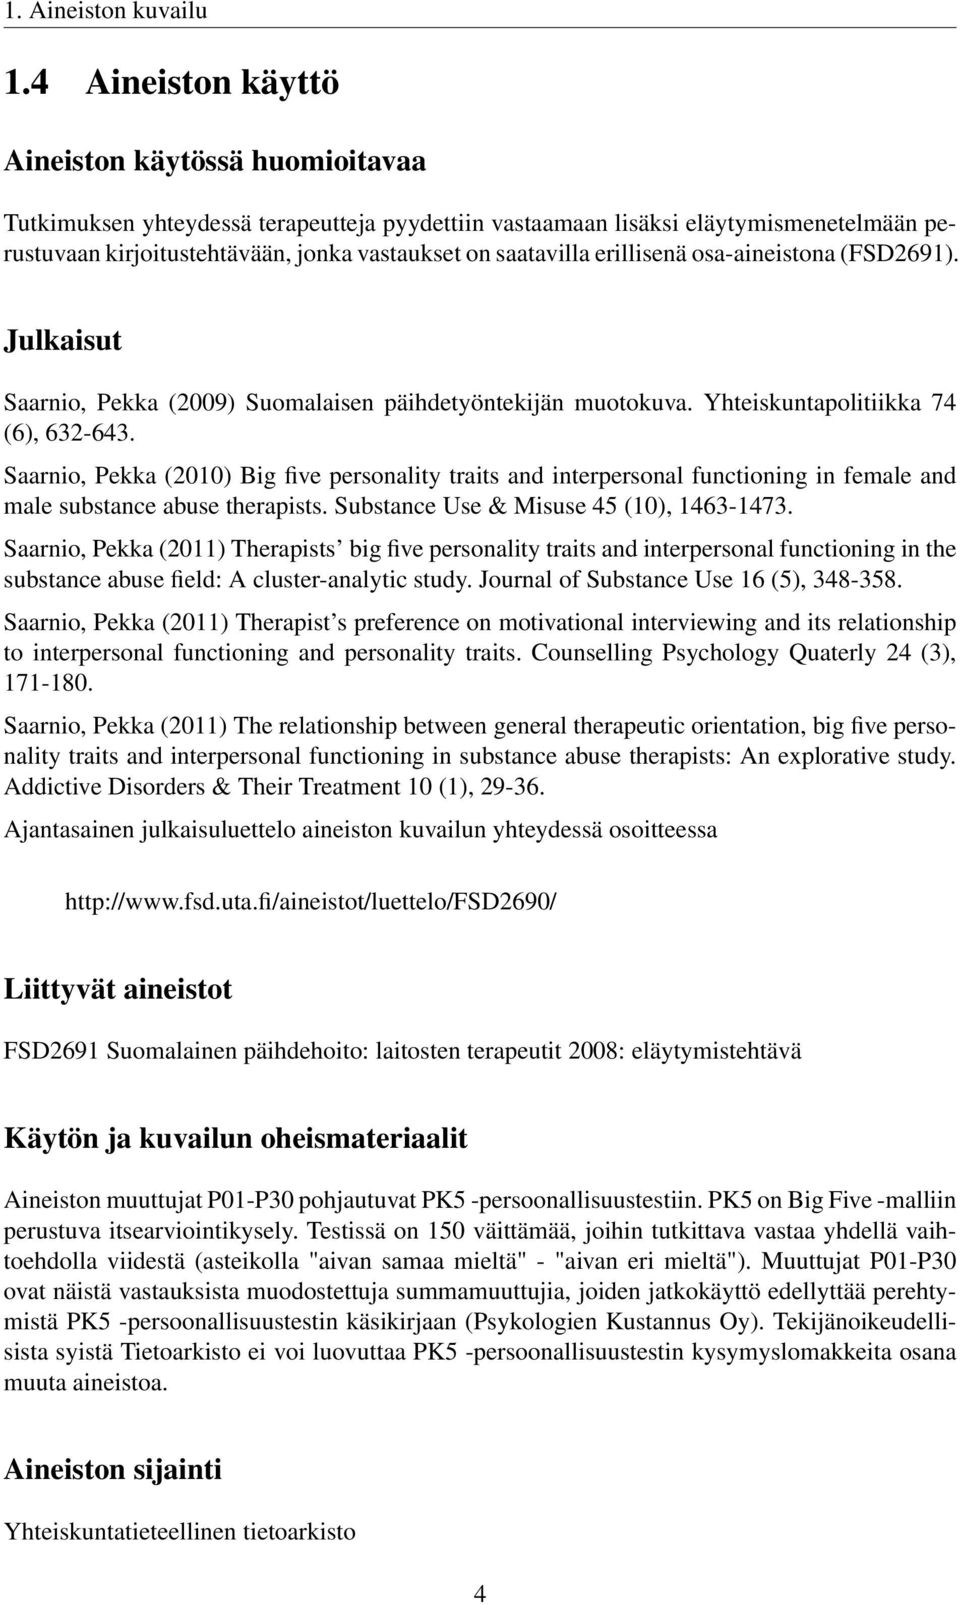 saatavilla erillisenä osa-aineistona (FSD2691). Julkaisut Saarnio, Pekka (2009) Suomalaisen päihdetyöntekijän muotokuva. Yhteiskuntapolitiikka 74 (6), 632-643.